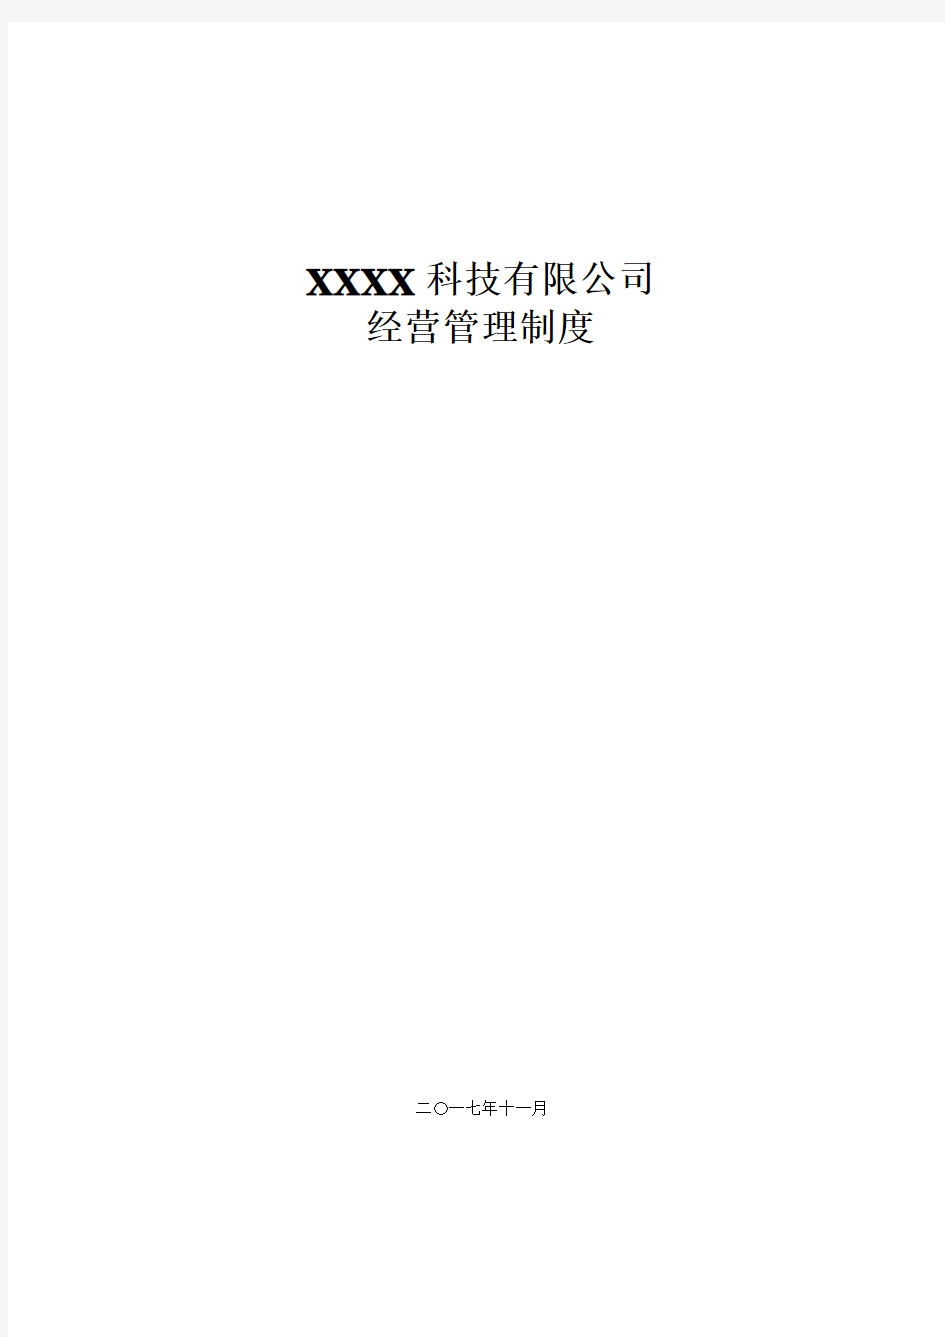 xxx公司经营管理制度(范本)